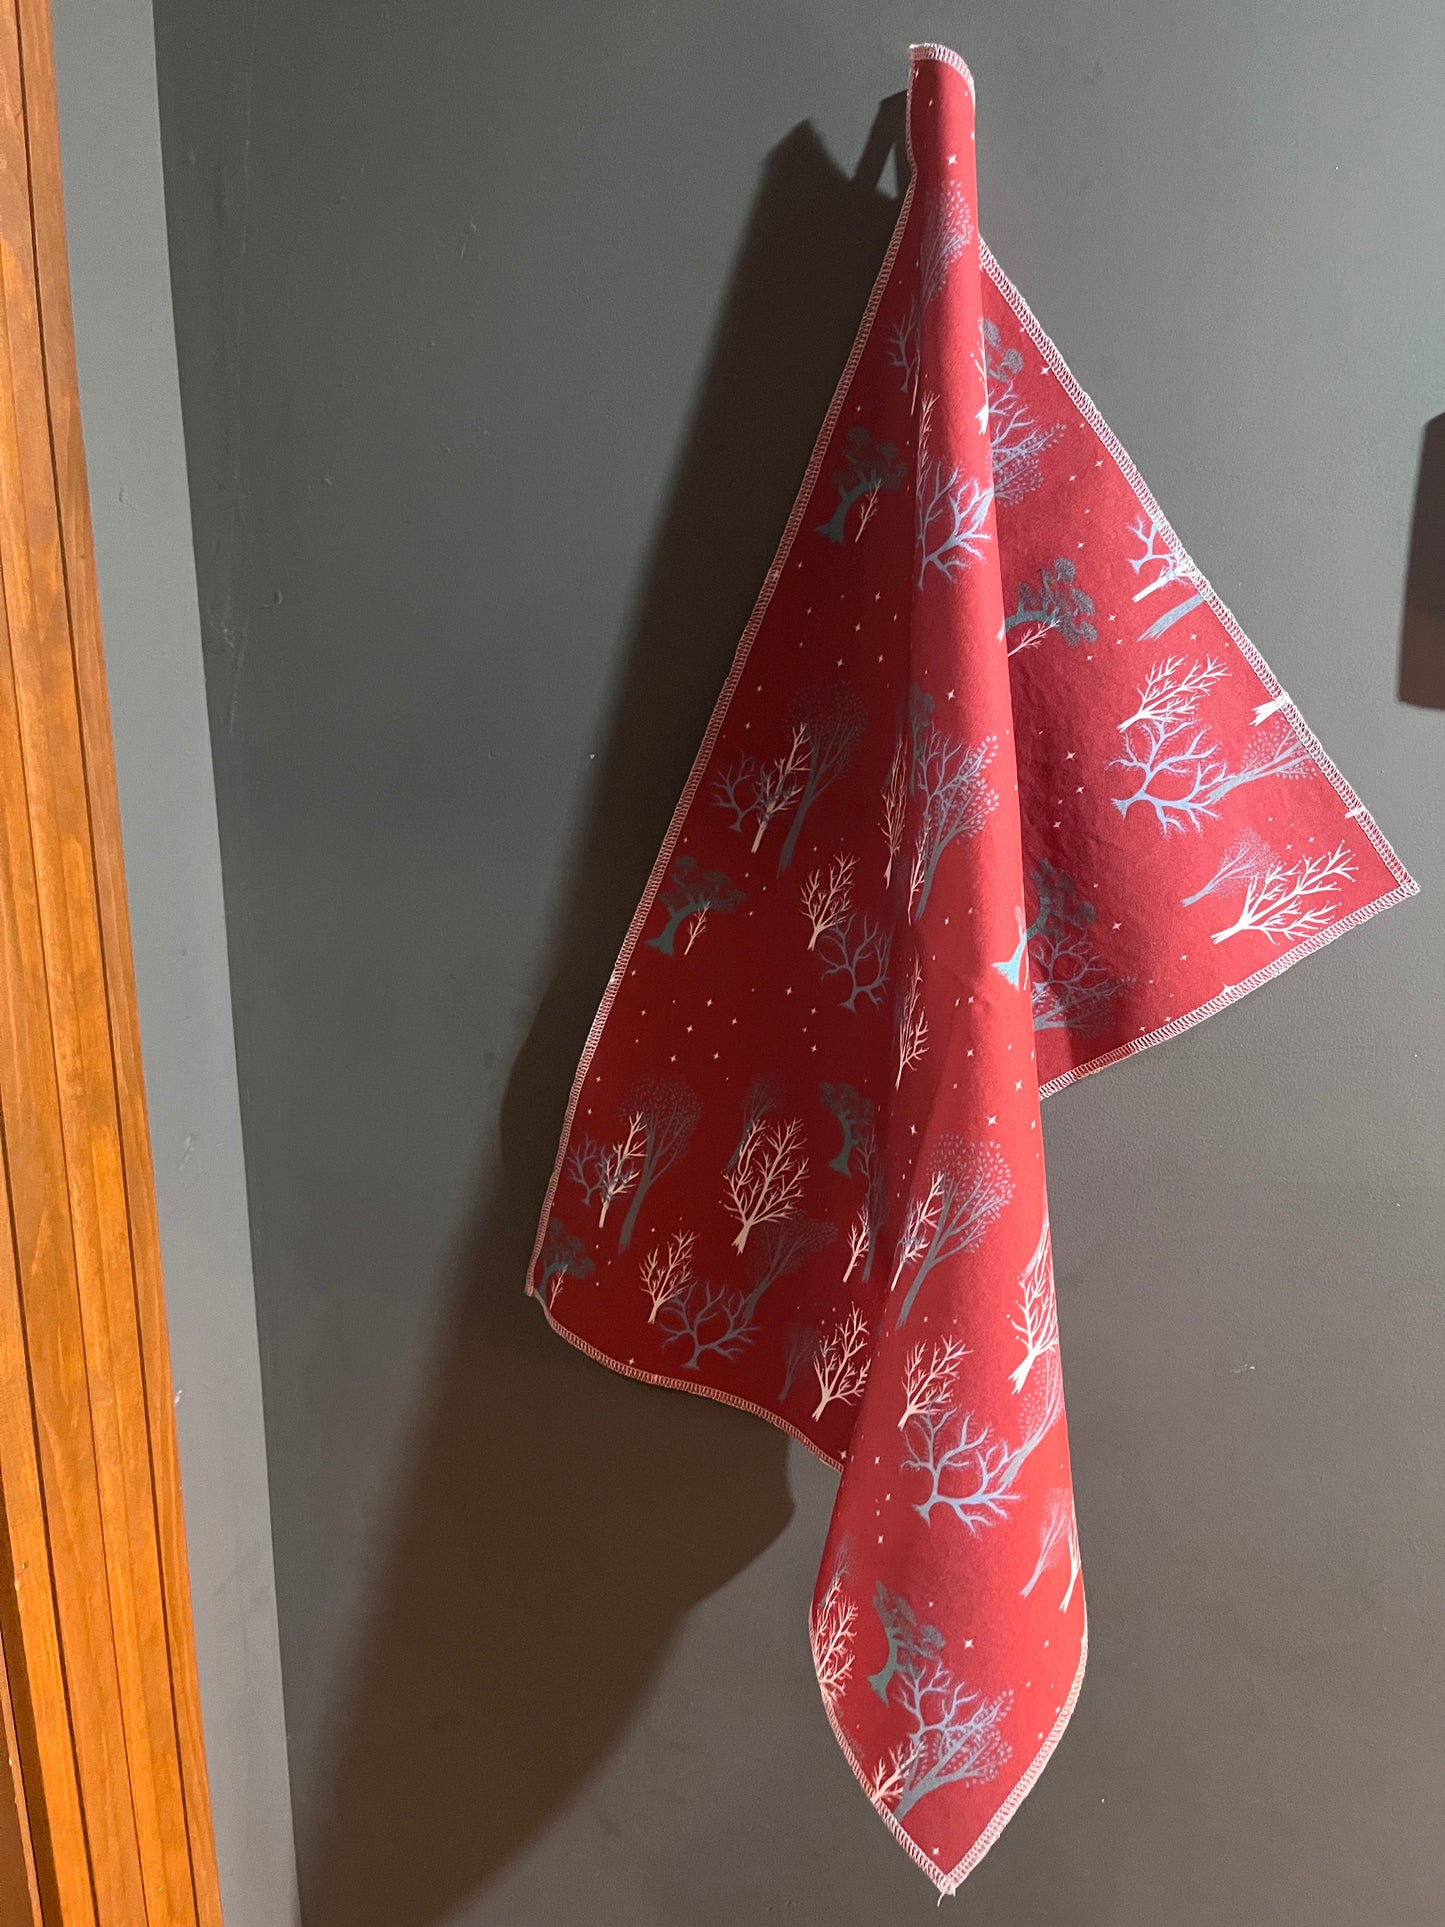 Tea Towel in "Starry Woods"- Red